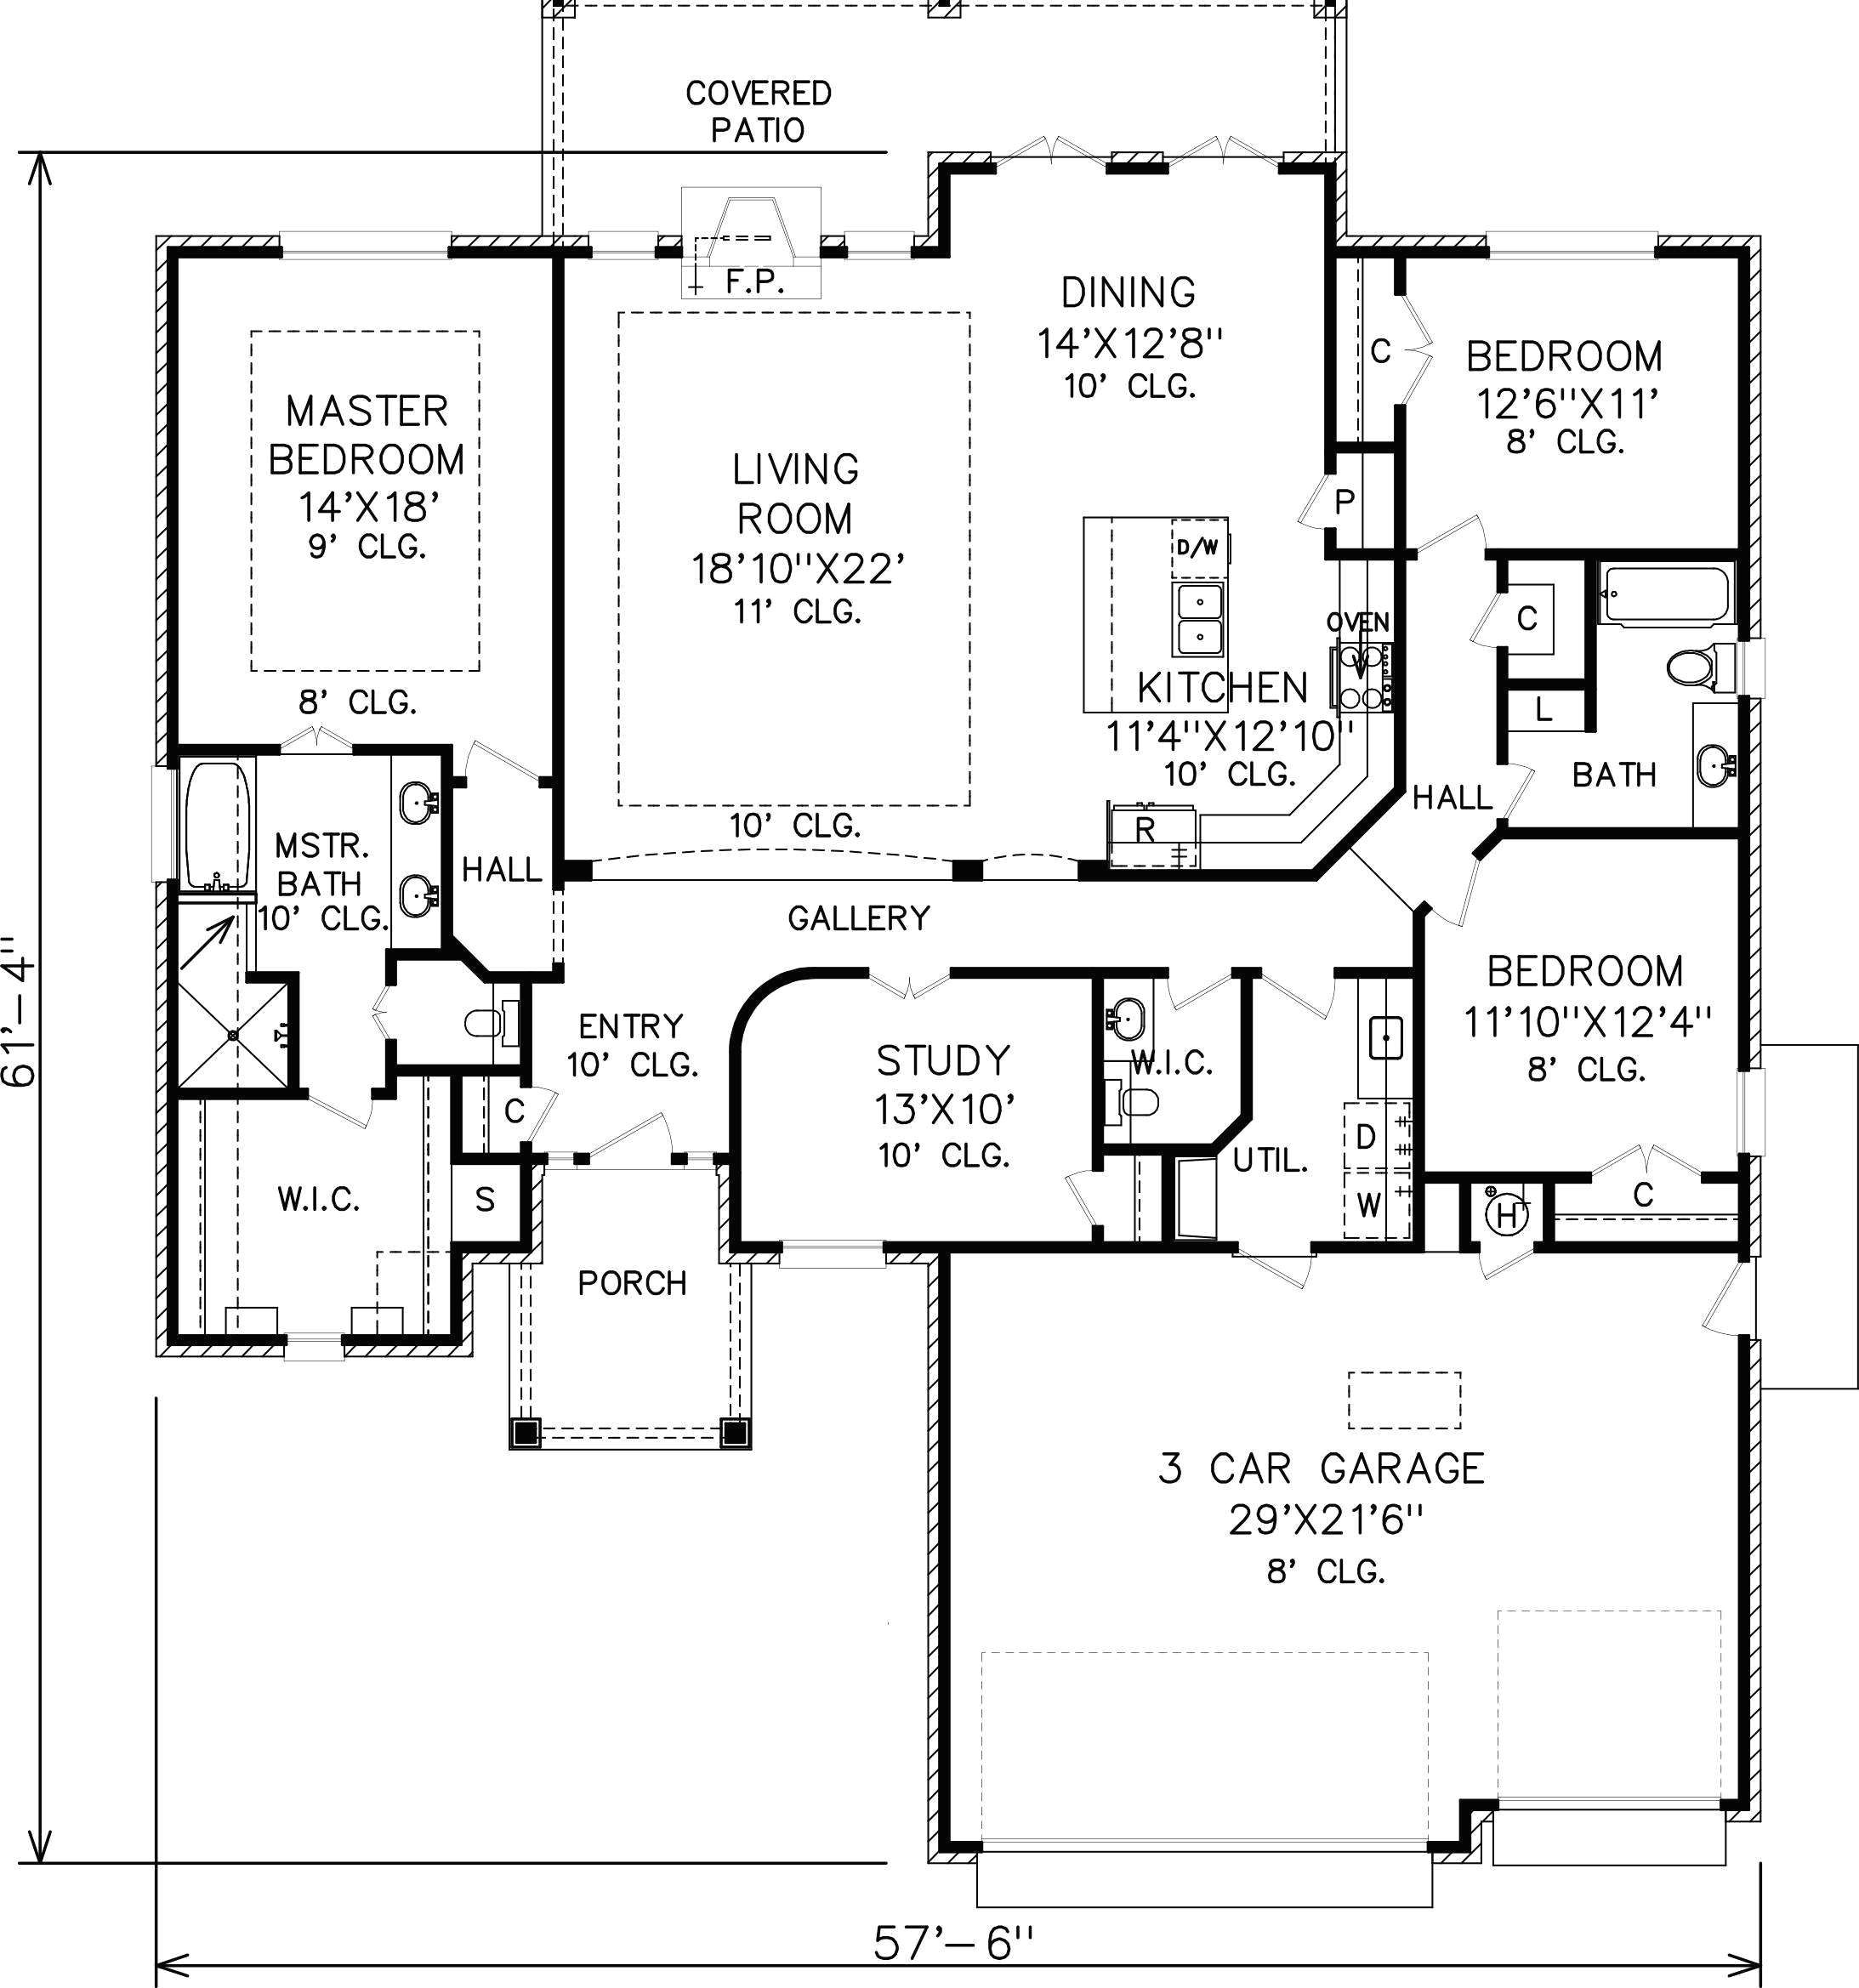 www home design plan new kitchen floor plans floor plan examples awesome design plan 0d house